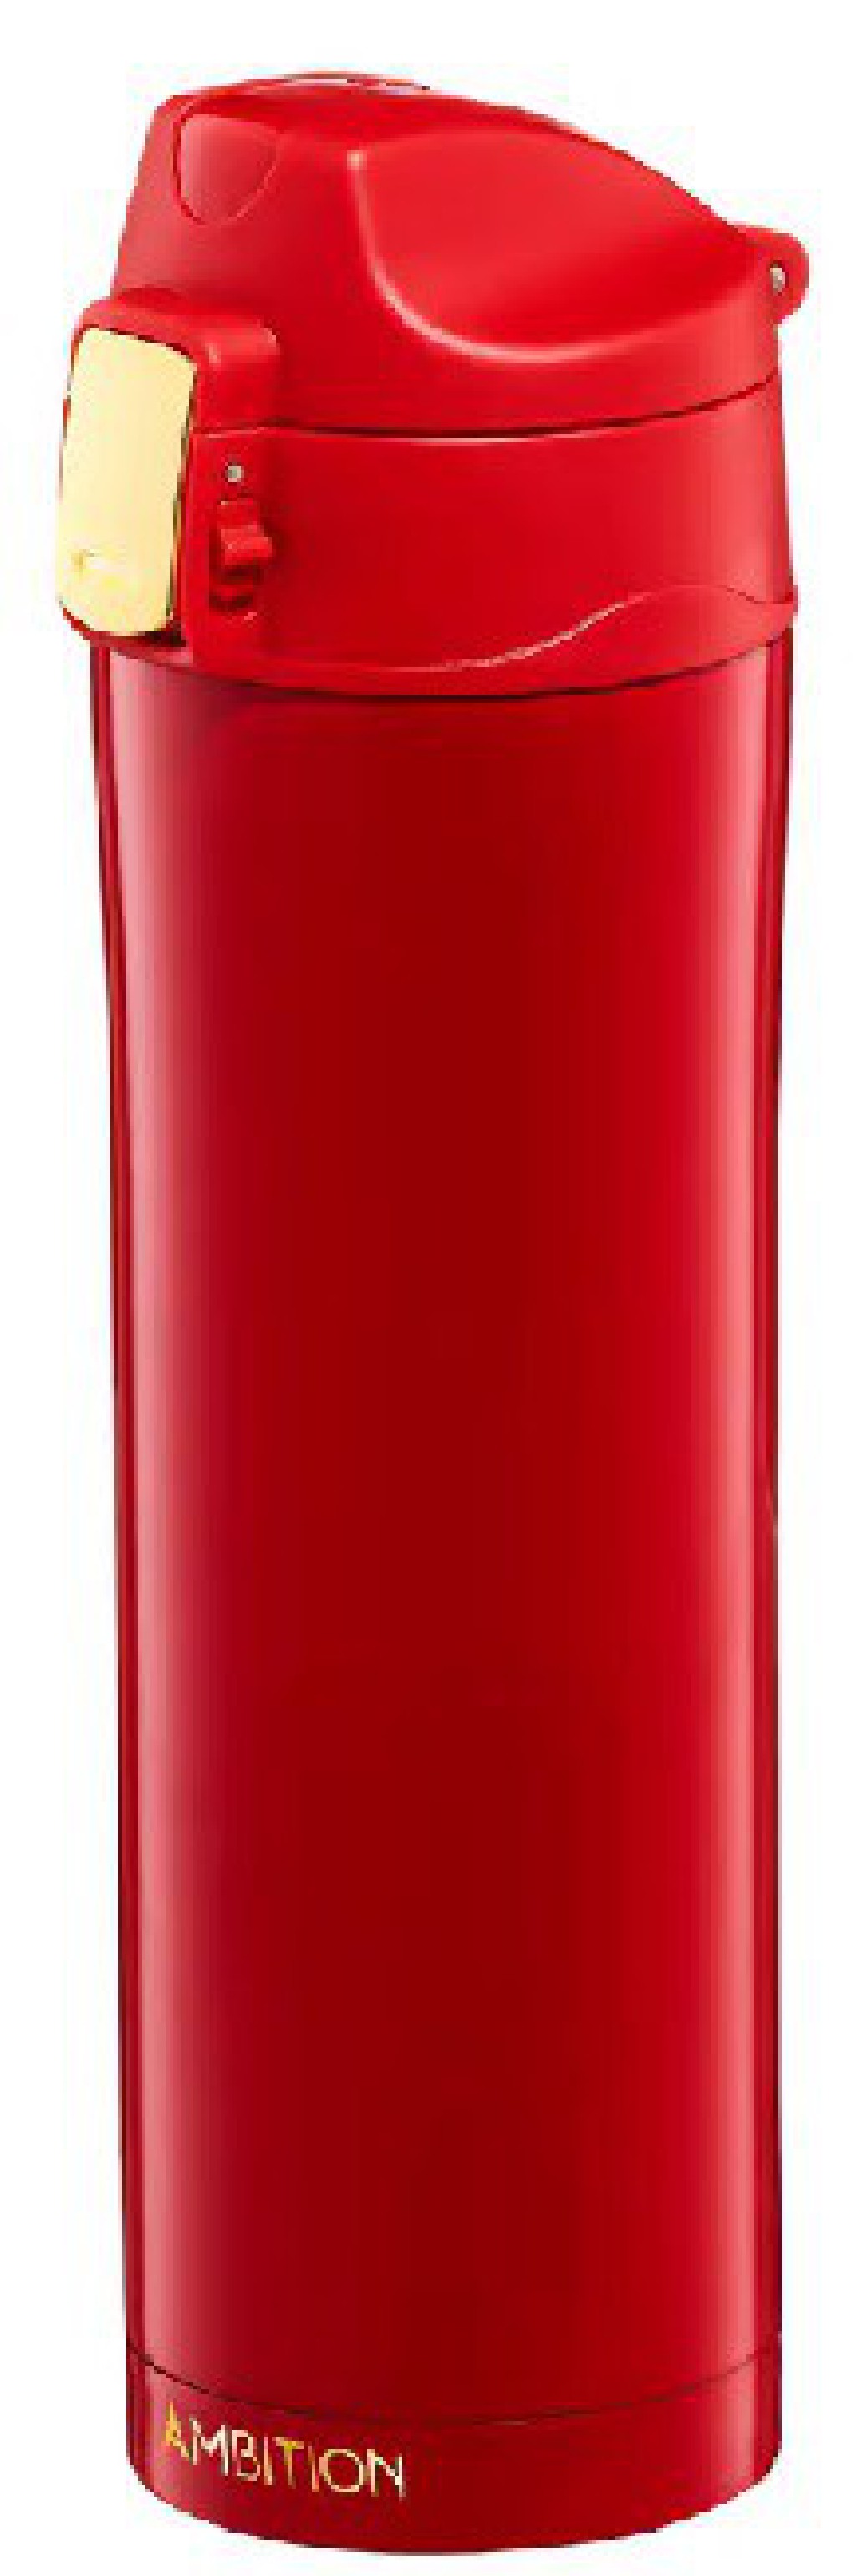 Kubek termiczny Ambition Royal 420 ml czerwony